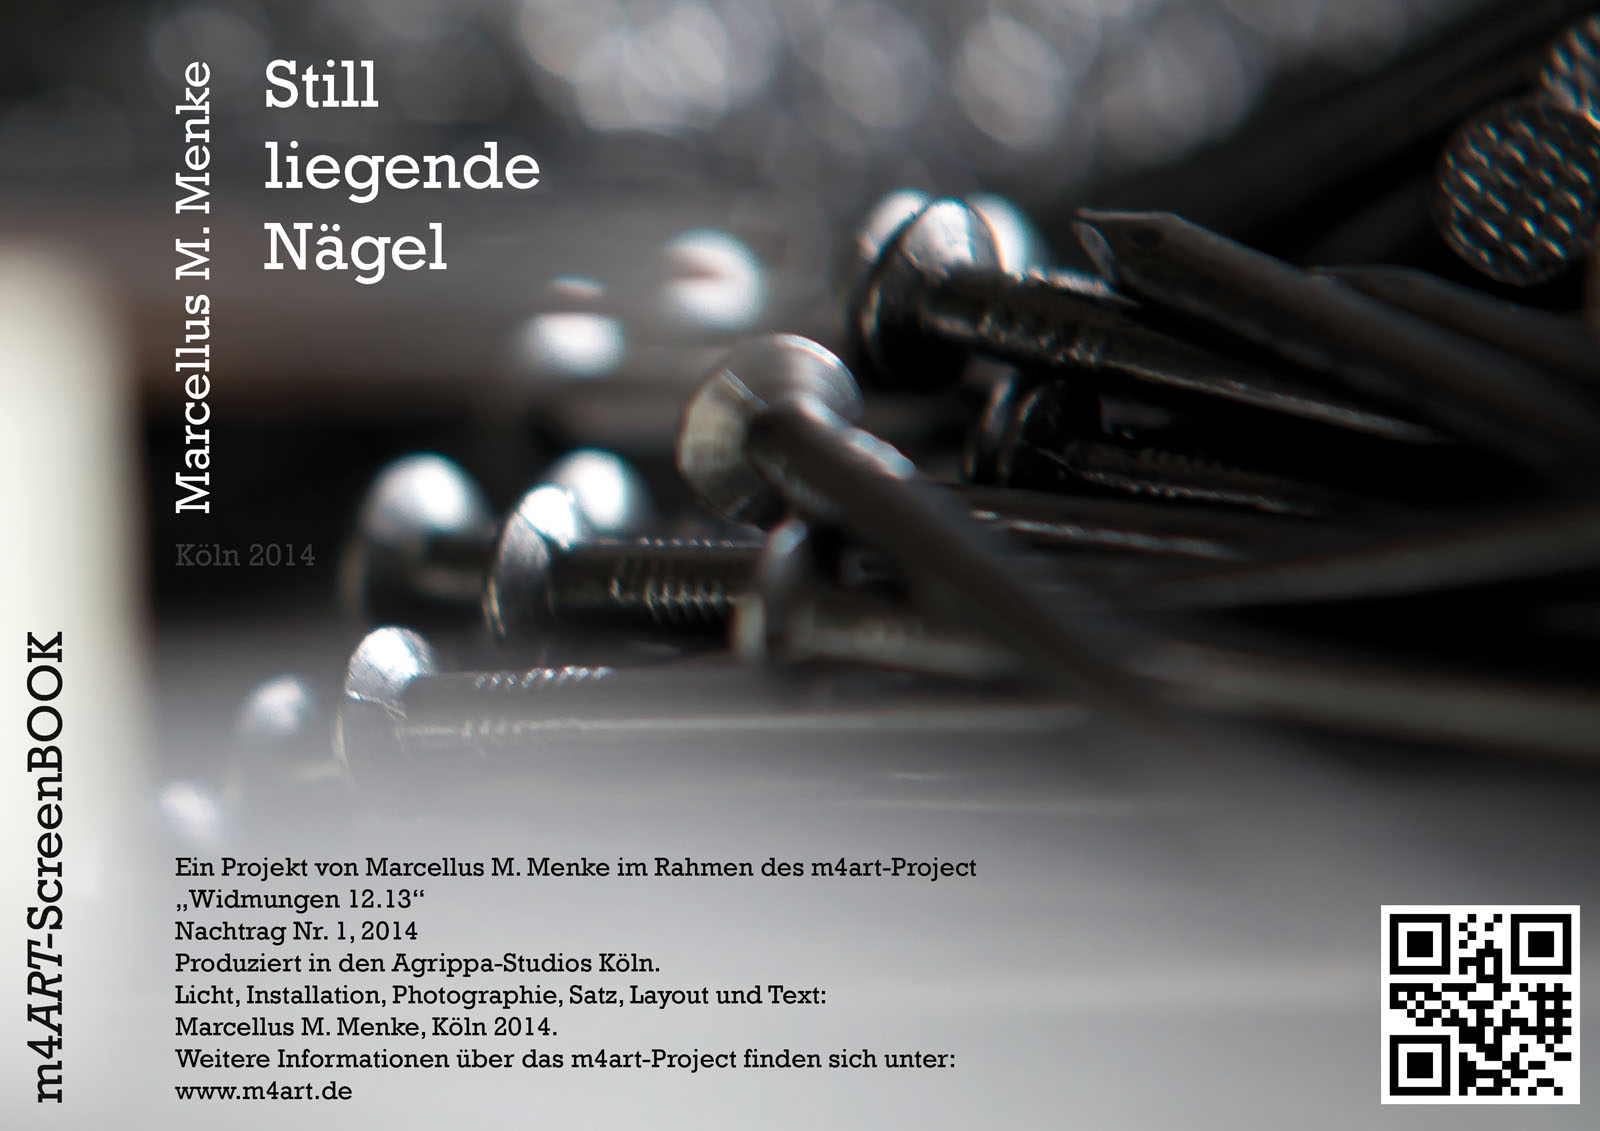 Marcellus M. Menke: „Still liegende Nägel“. Photographie mit gesetztem Text, Köln 2014. m4ART-ScreenBook, Seite 12.